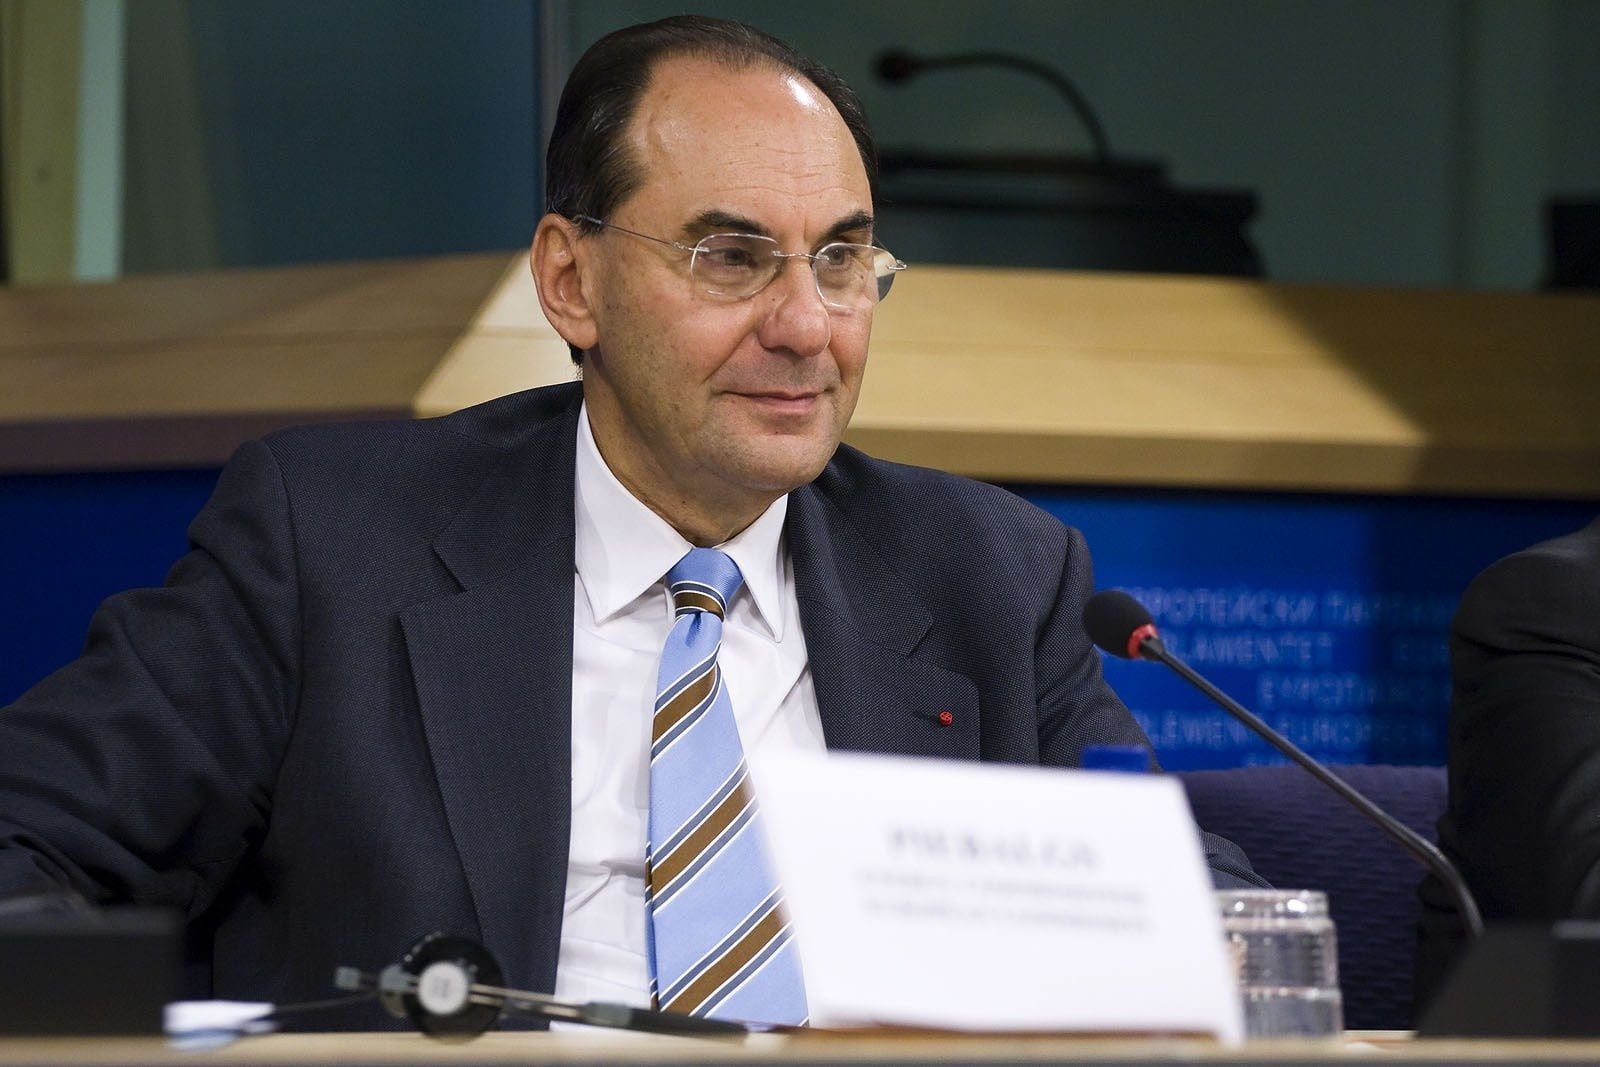 18/01/2012 Alejo Vidal-Quadras (PP), Vicepresidente Del Parlamento Europeo
BARCELONA POLÍTICA CATALUÑA ESPAÑA EUROPA
PARLAMENTO EUROPEO
